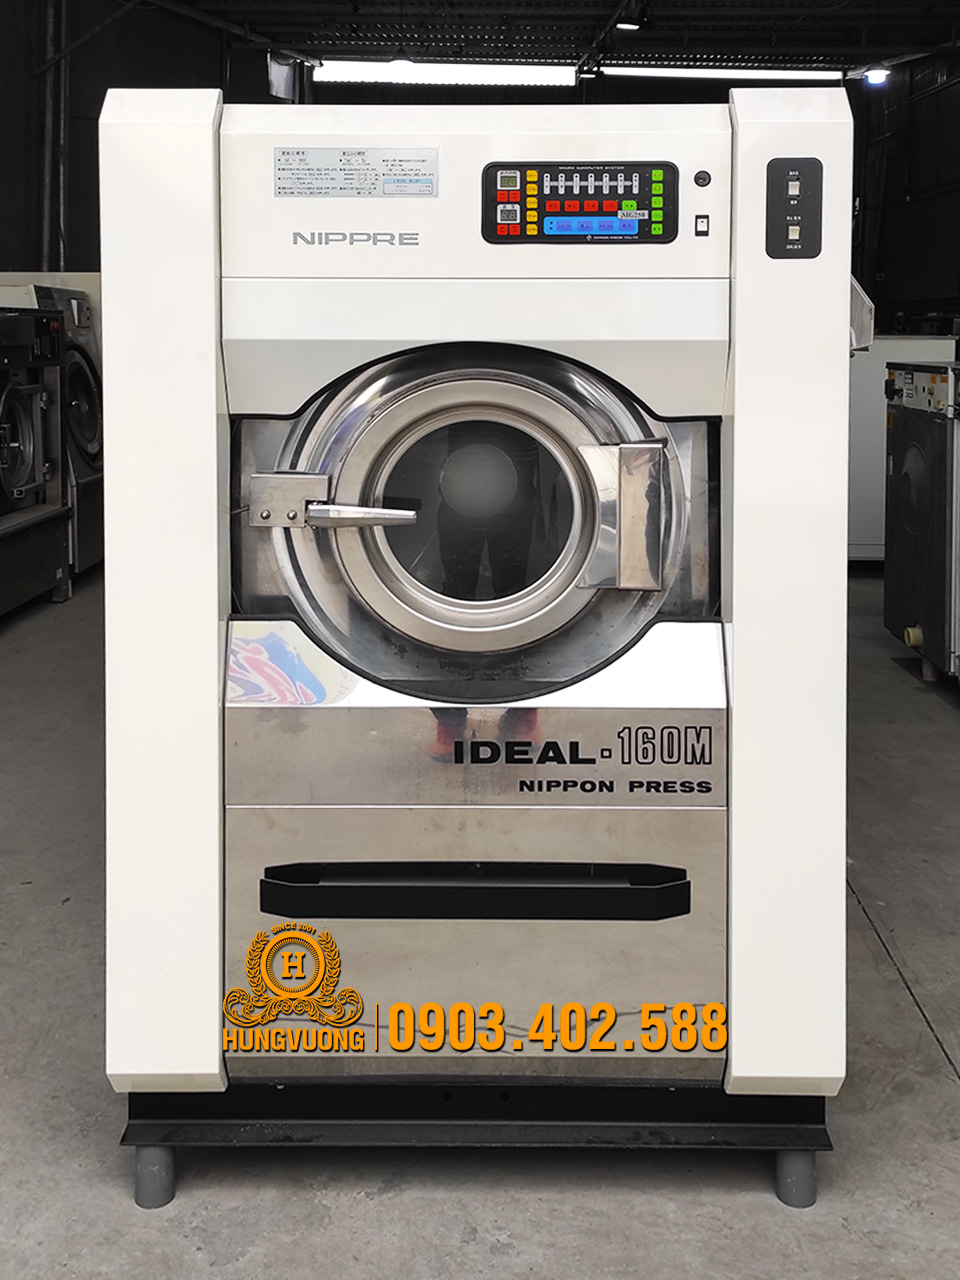 Mặt trước máy giặt công nghiệp NIPPON PRESS IDEAL-160M, 16kg, chân chống rung, biến tần, Nhật Bản